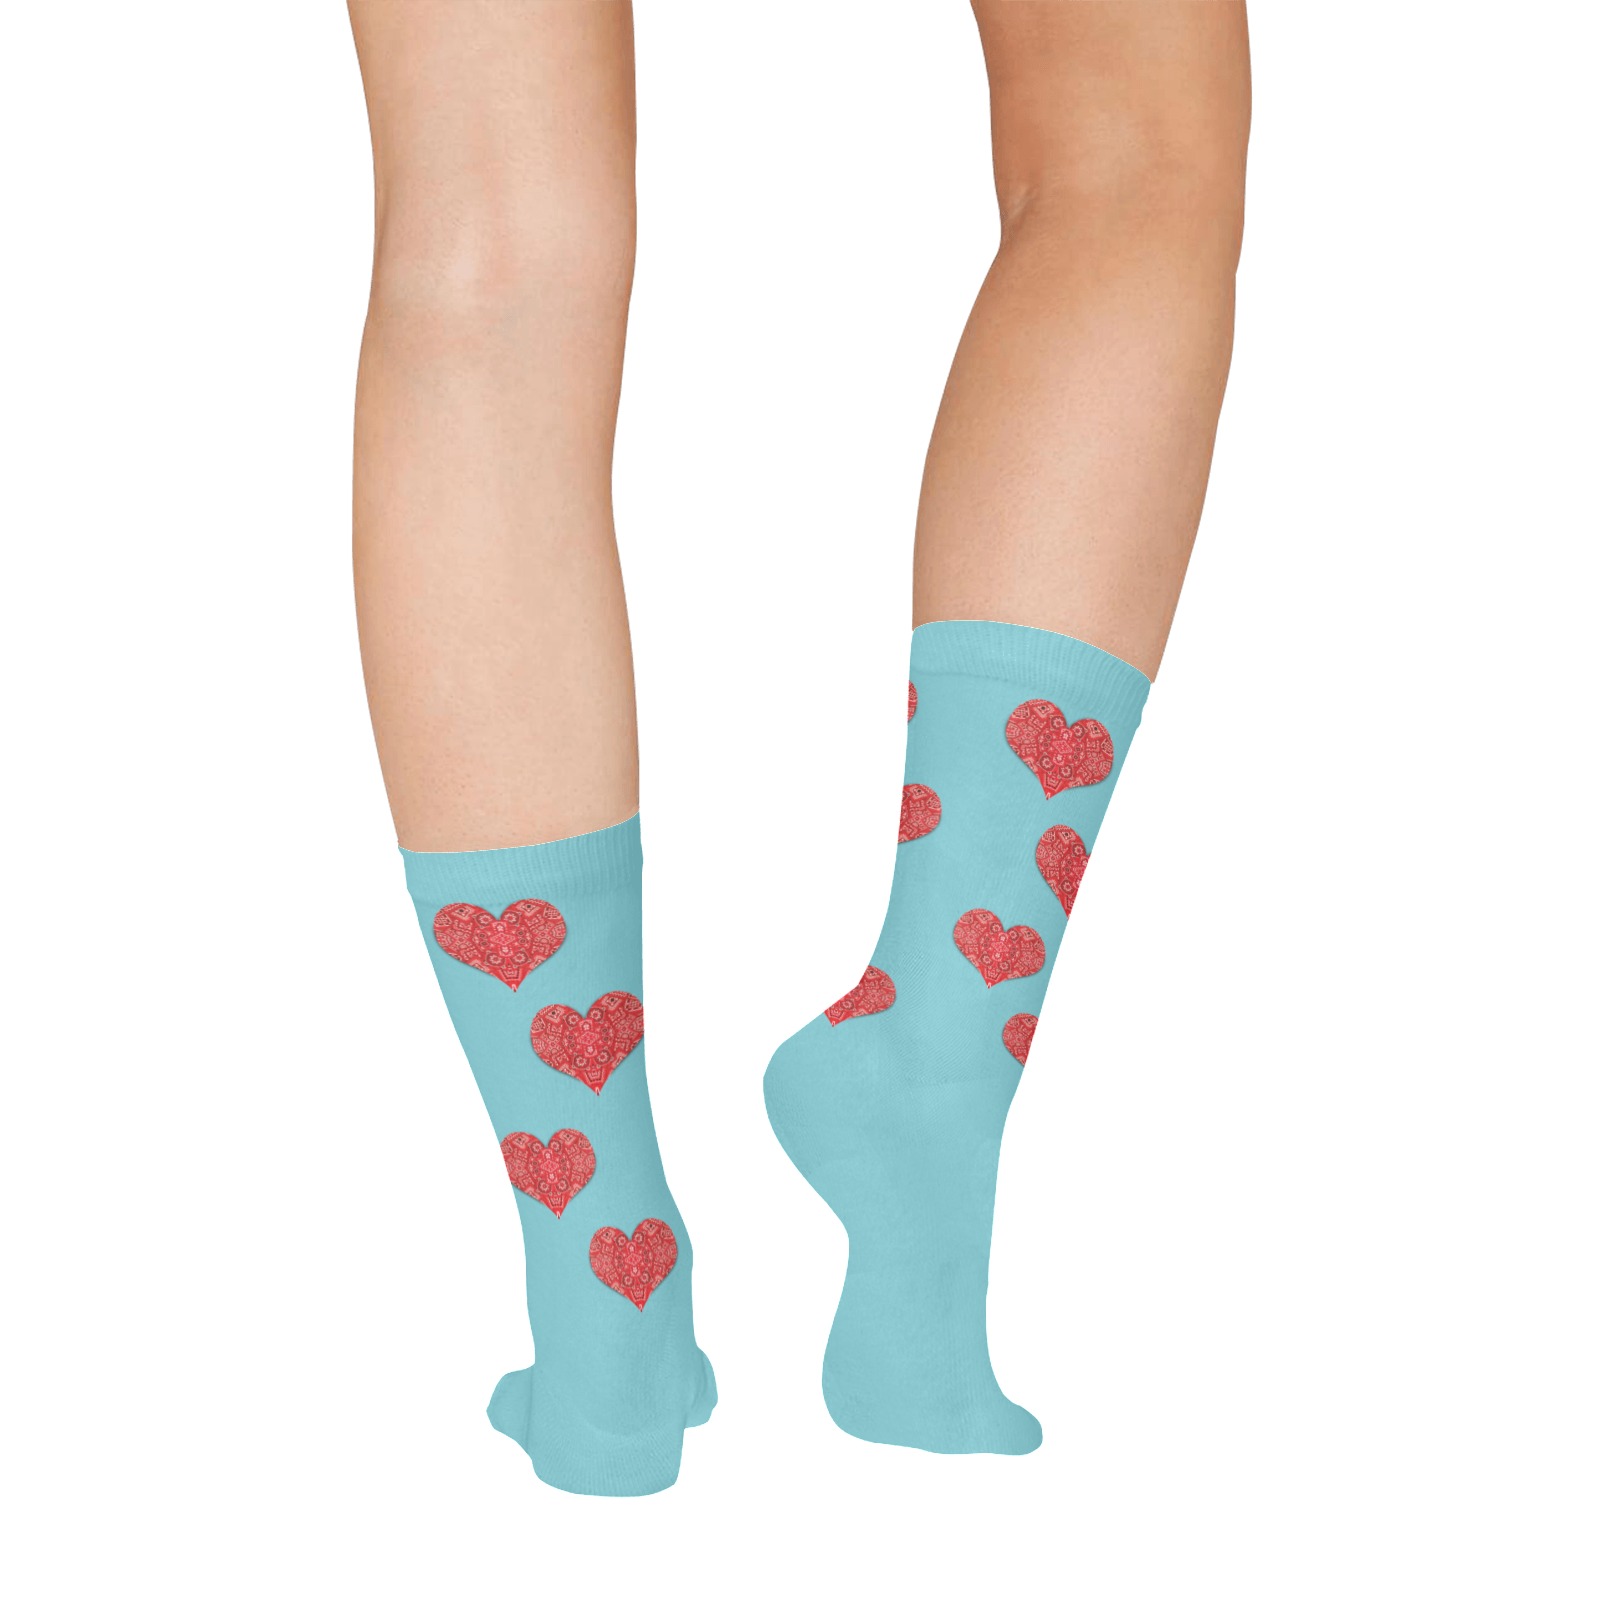 Bandana Hearts on Blue All Over Print Socks for Women